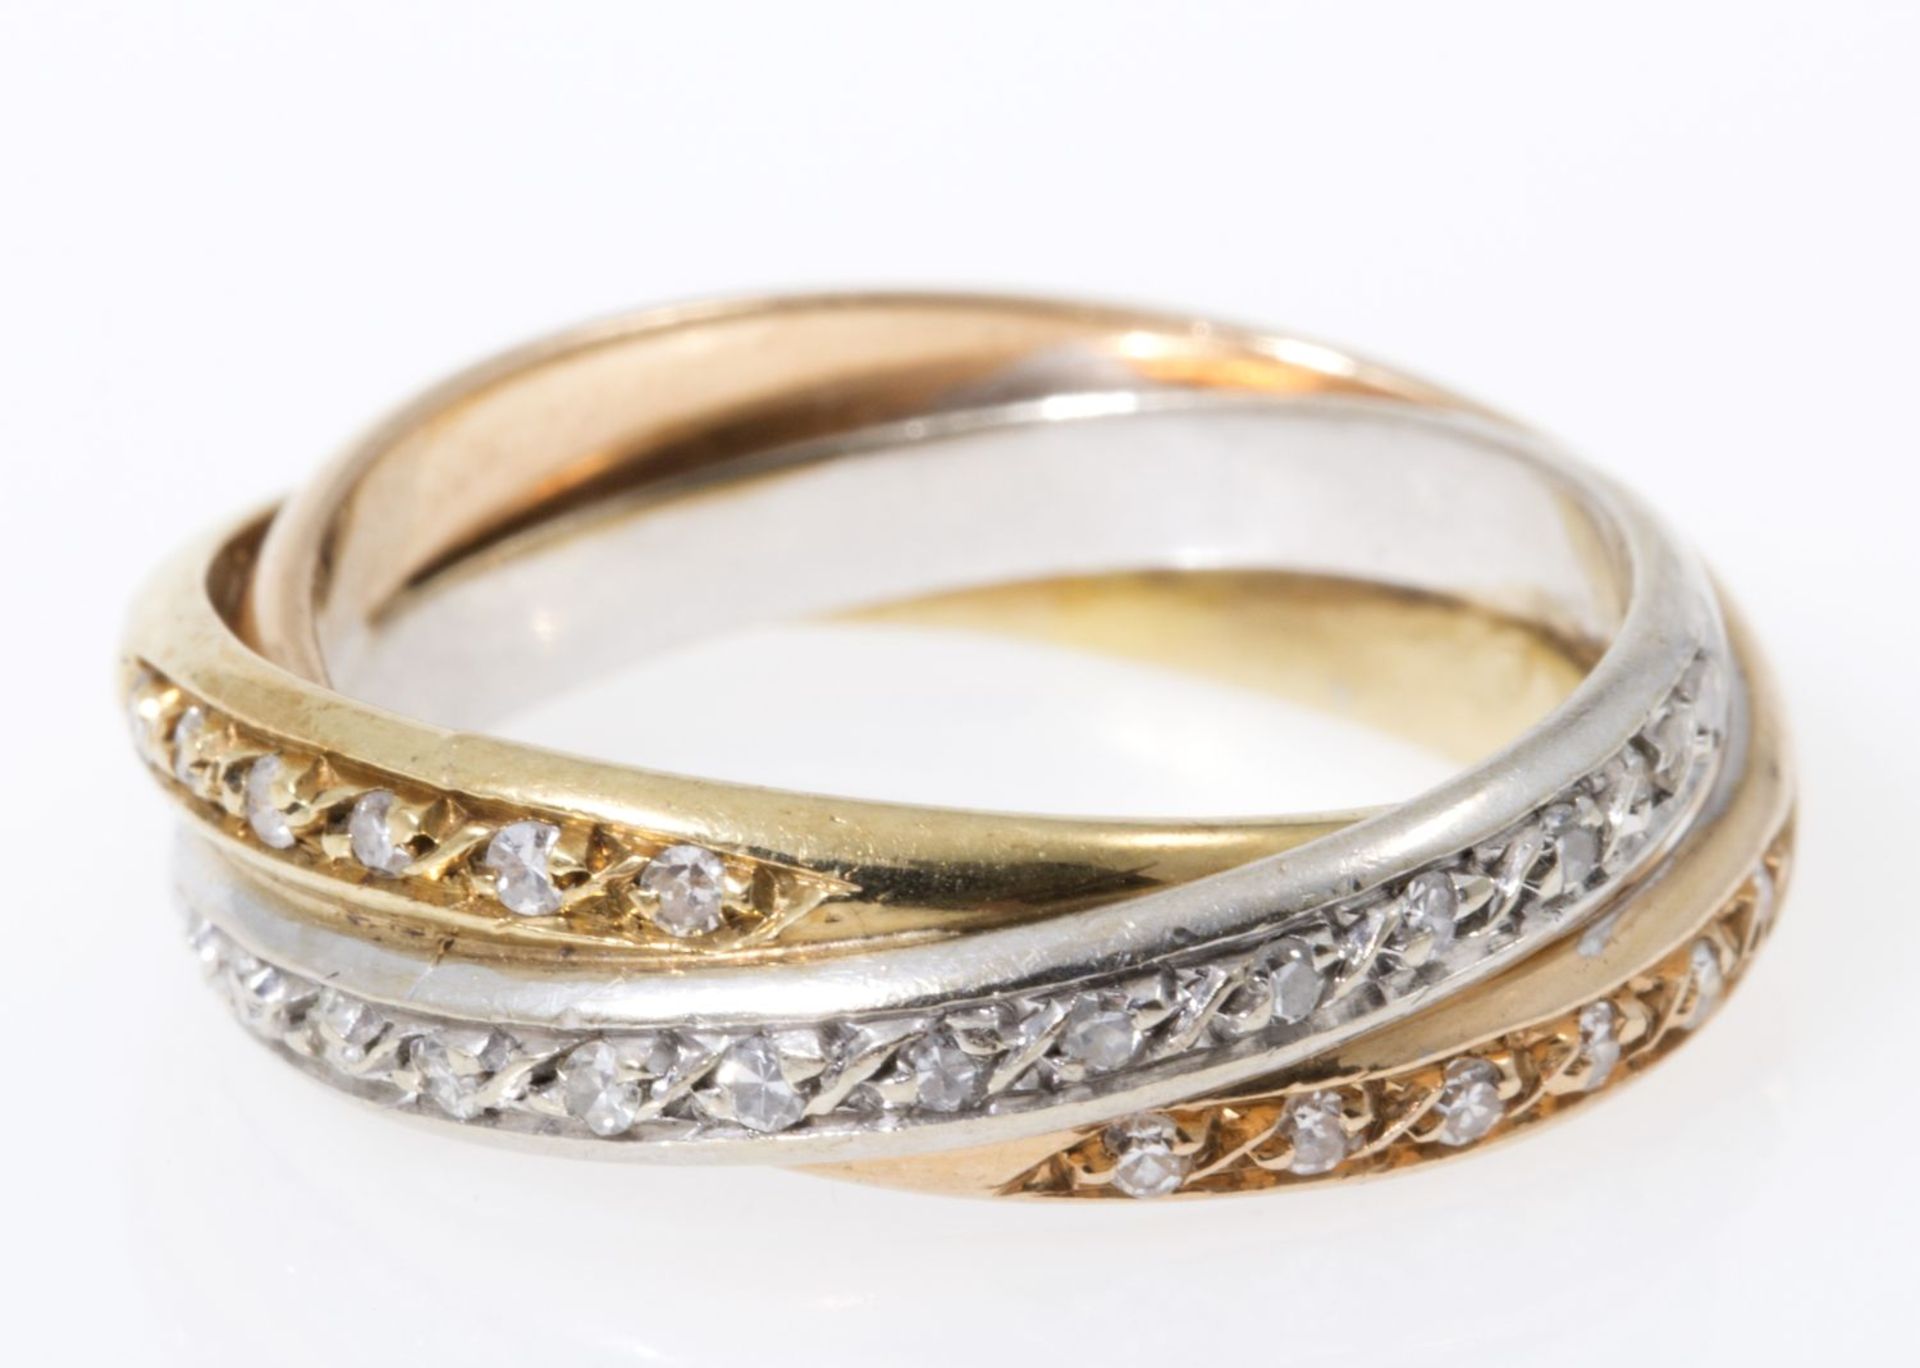 Zarter Diamant-Ring à trois couleurs Gelbgold, Weißgold und Rotgold 585. Ausgefasst mit kleinen 8/8- - Bild 2 aus 3